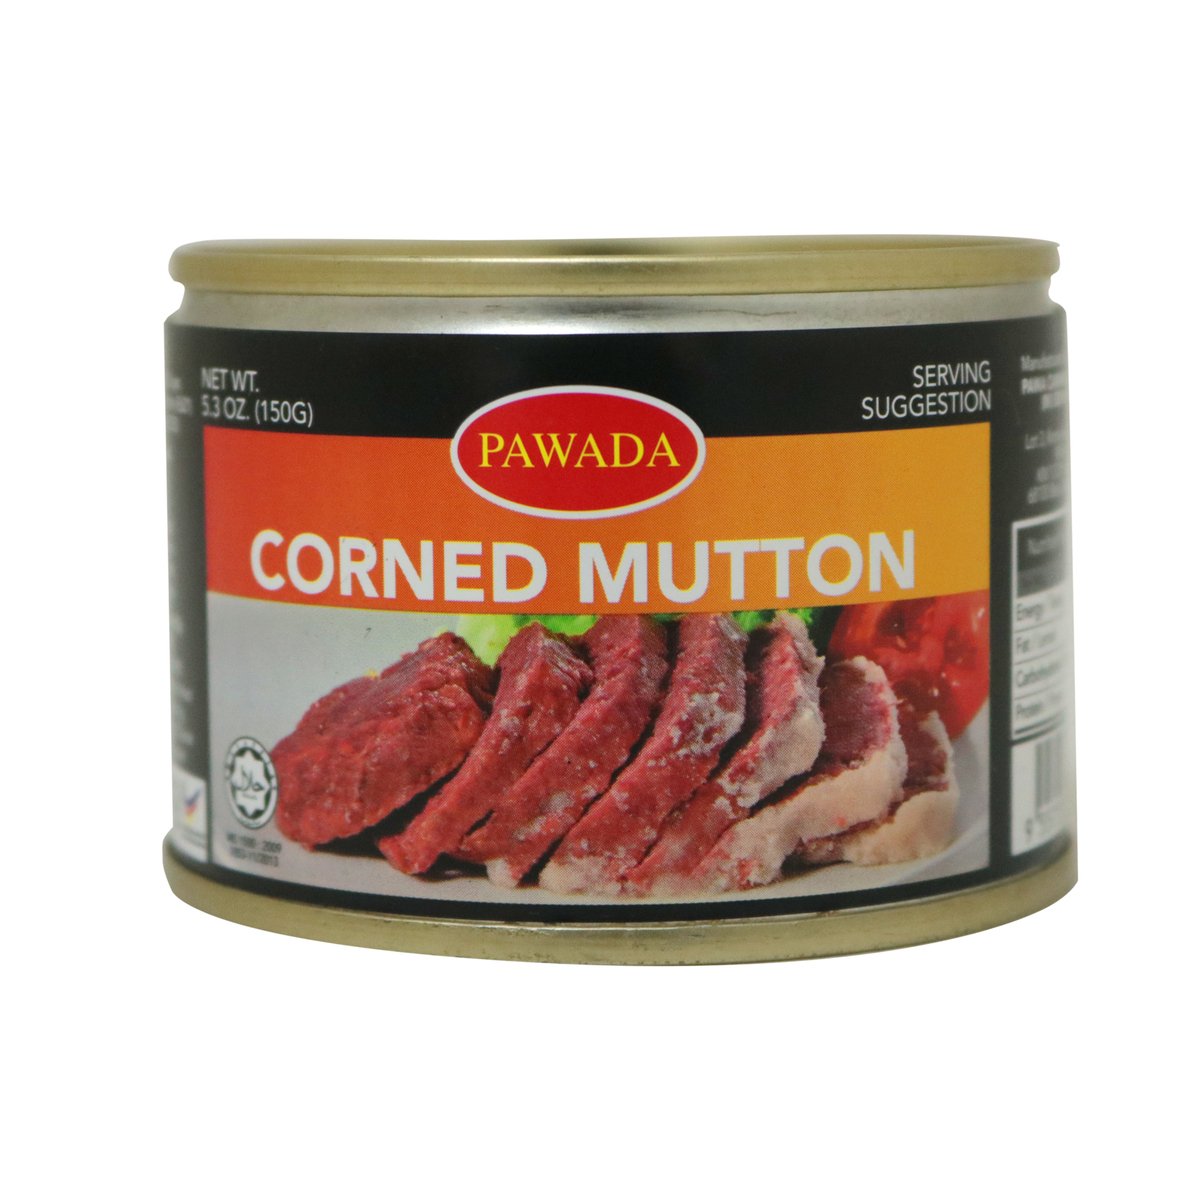 Pawada Corned Mutton 150g